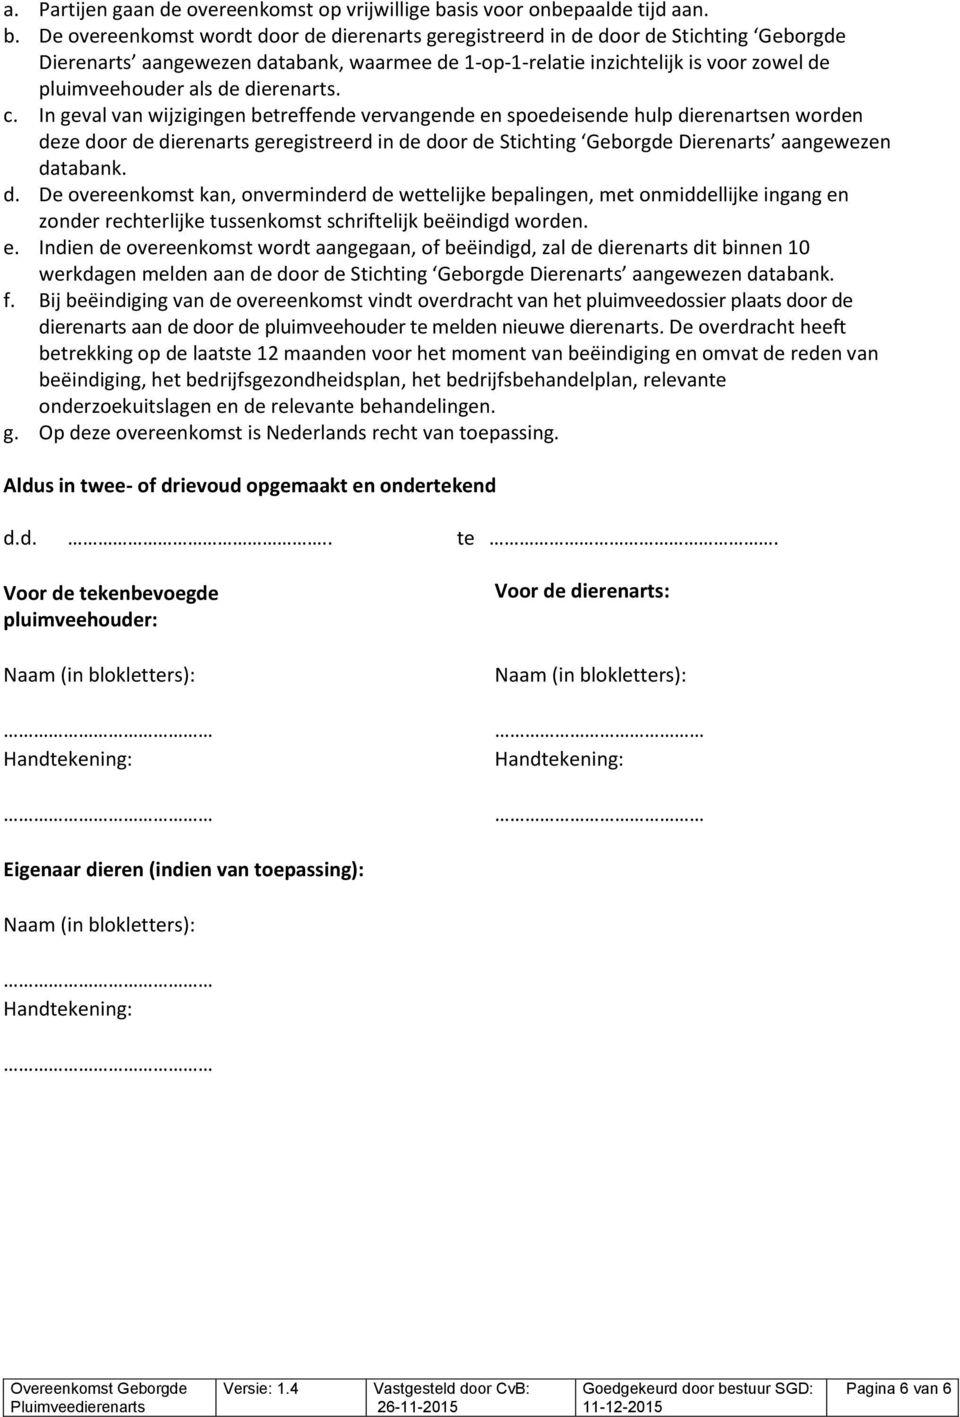 De overeenkomst wordt door de dierenarts geregistreerd in de door de Stichting Geborgde Dierenarts aangewezen abank, waarmee de 1-op-1-relatie inzichtelijk is voor zowel de pluimveehouder als de